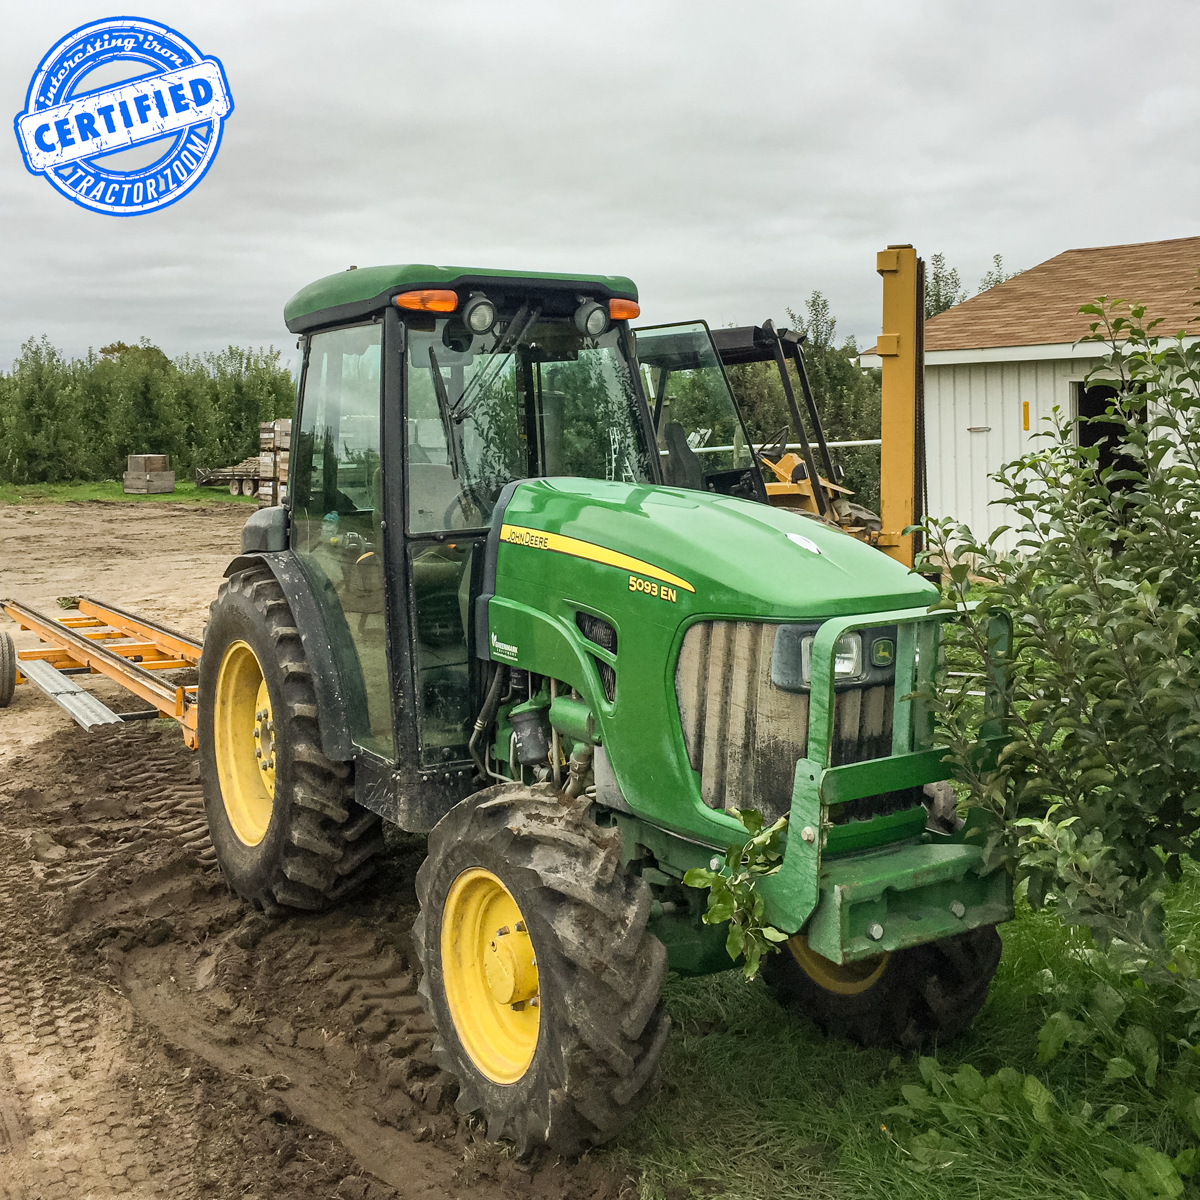 John Deere 5093EN orchard tractor